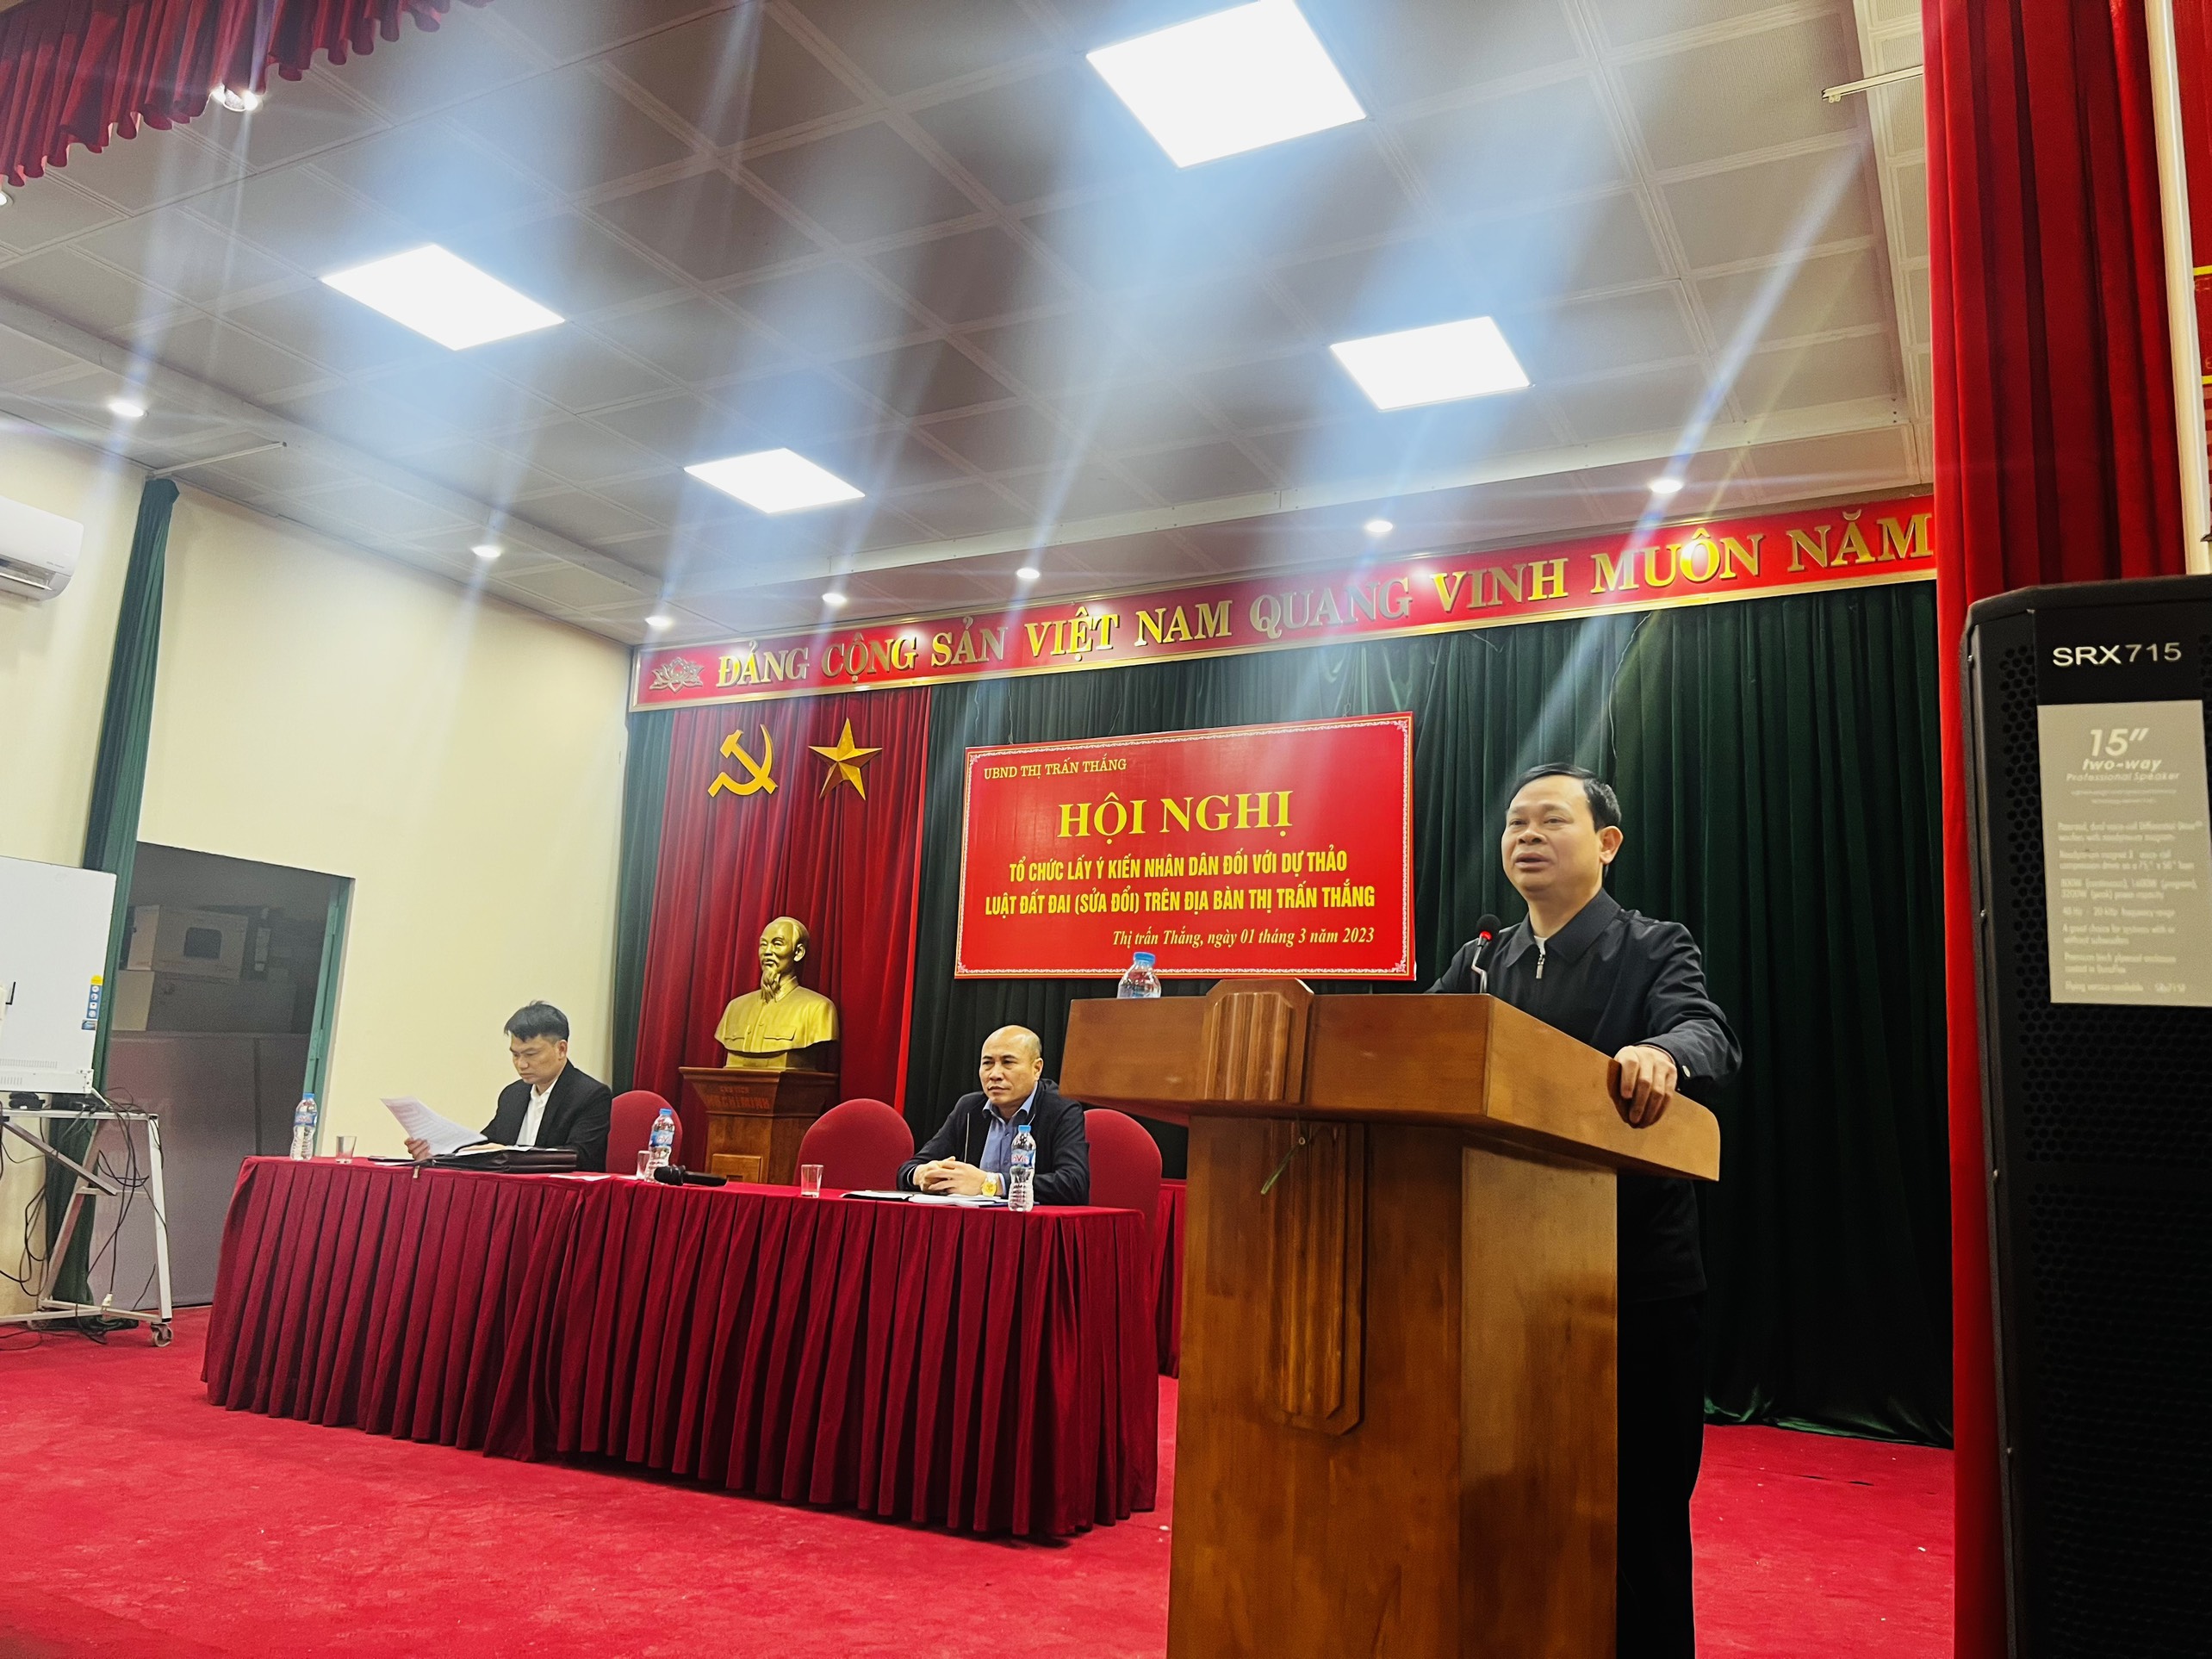 Đồng chí Nguyễn Đức Khoa - Đảng ủy viên, Bi thư Đảng ủy thị trấn Thắng phát biểu và chỉ đạo 